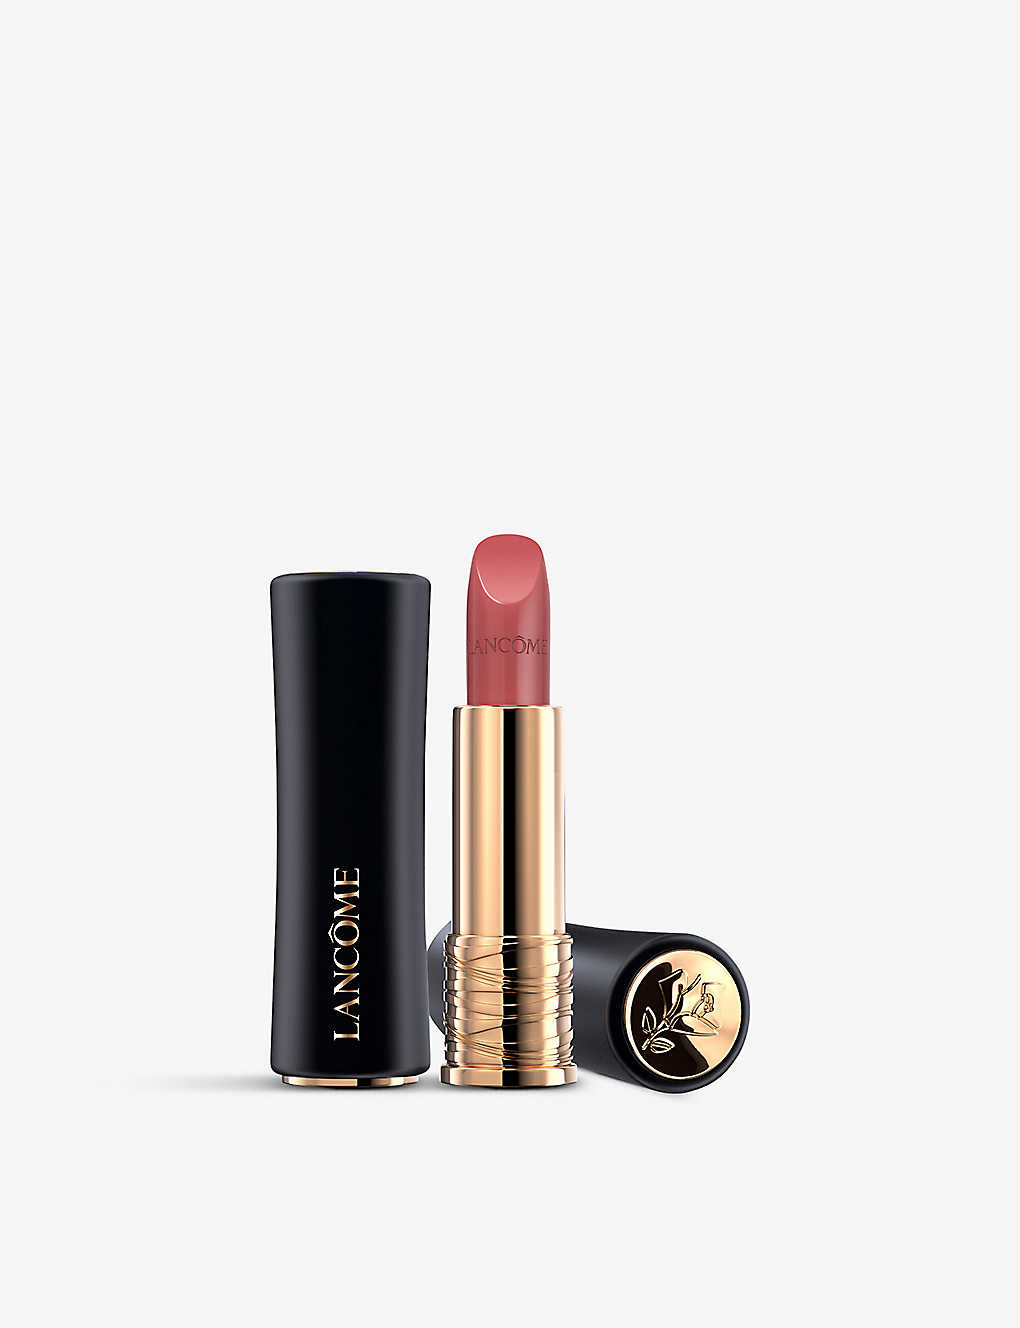 Lancôme L'absolu Rouge Cream Lipstick 3.4g In 264